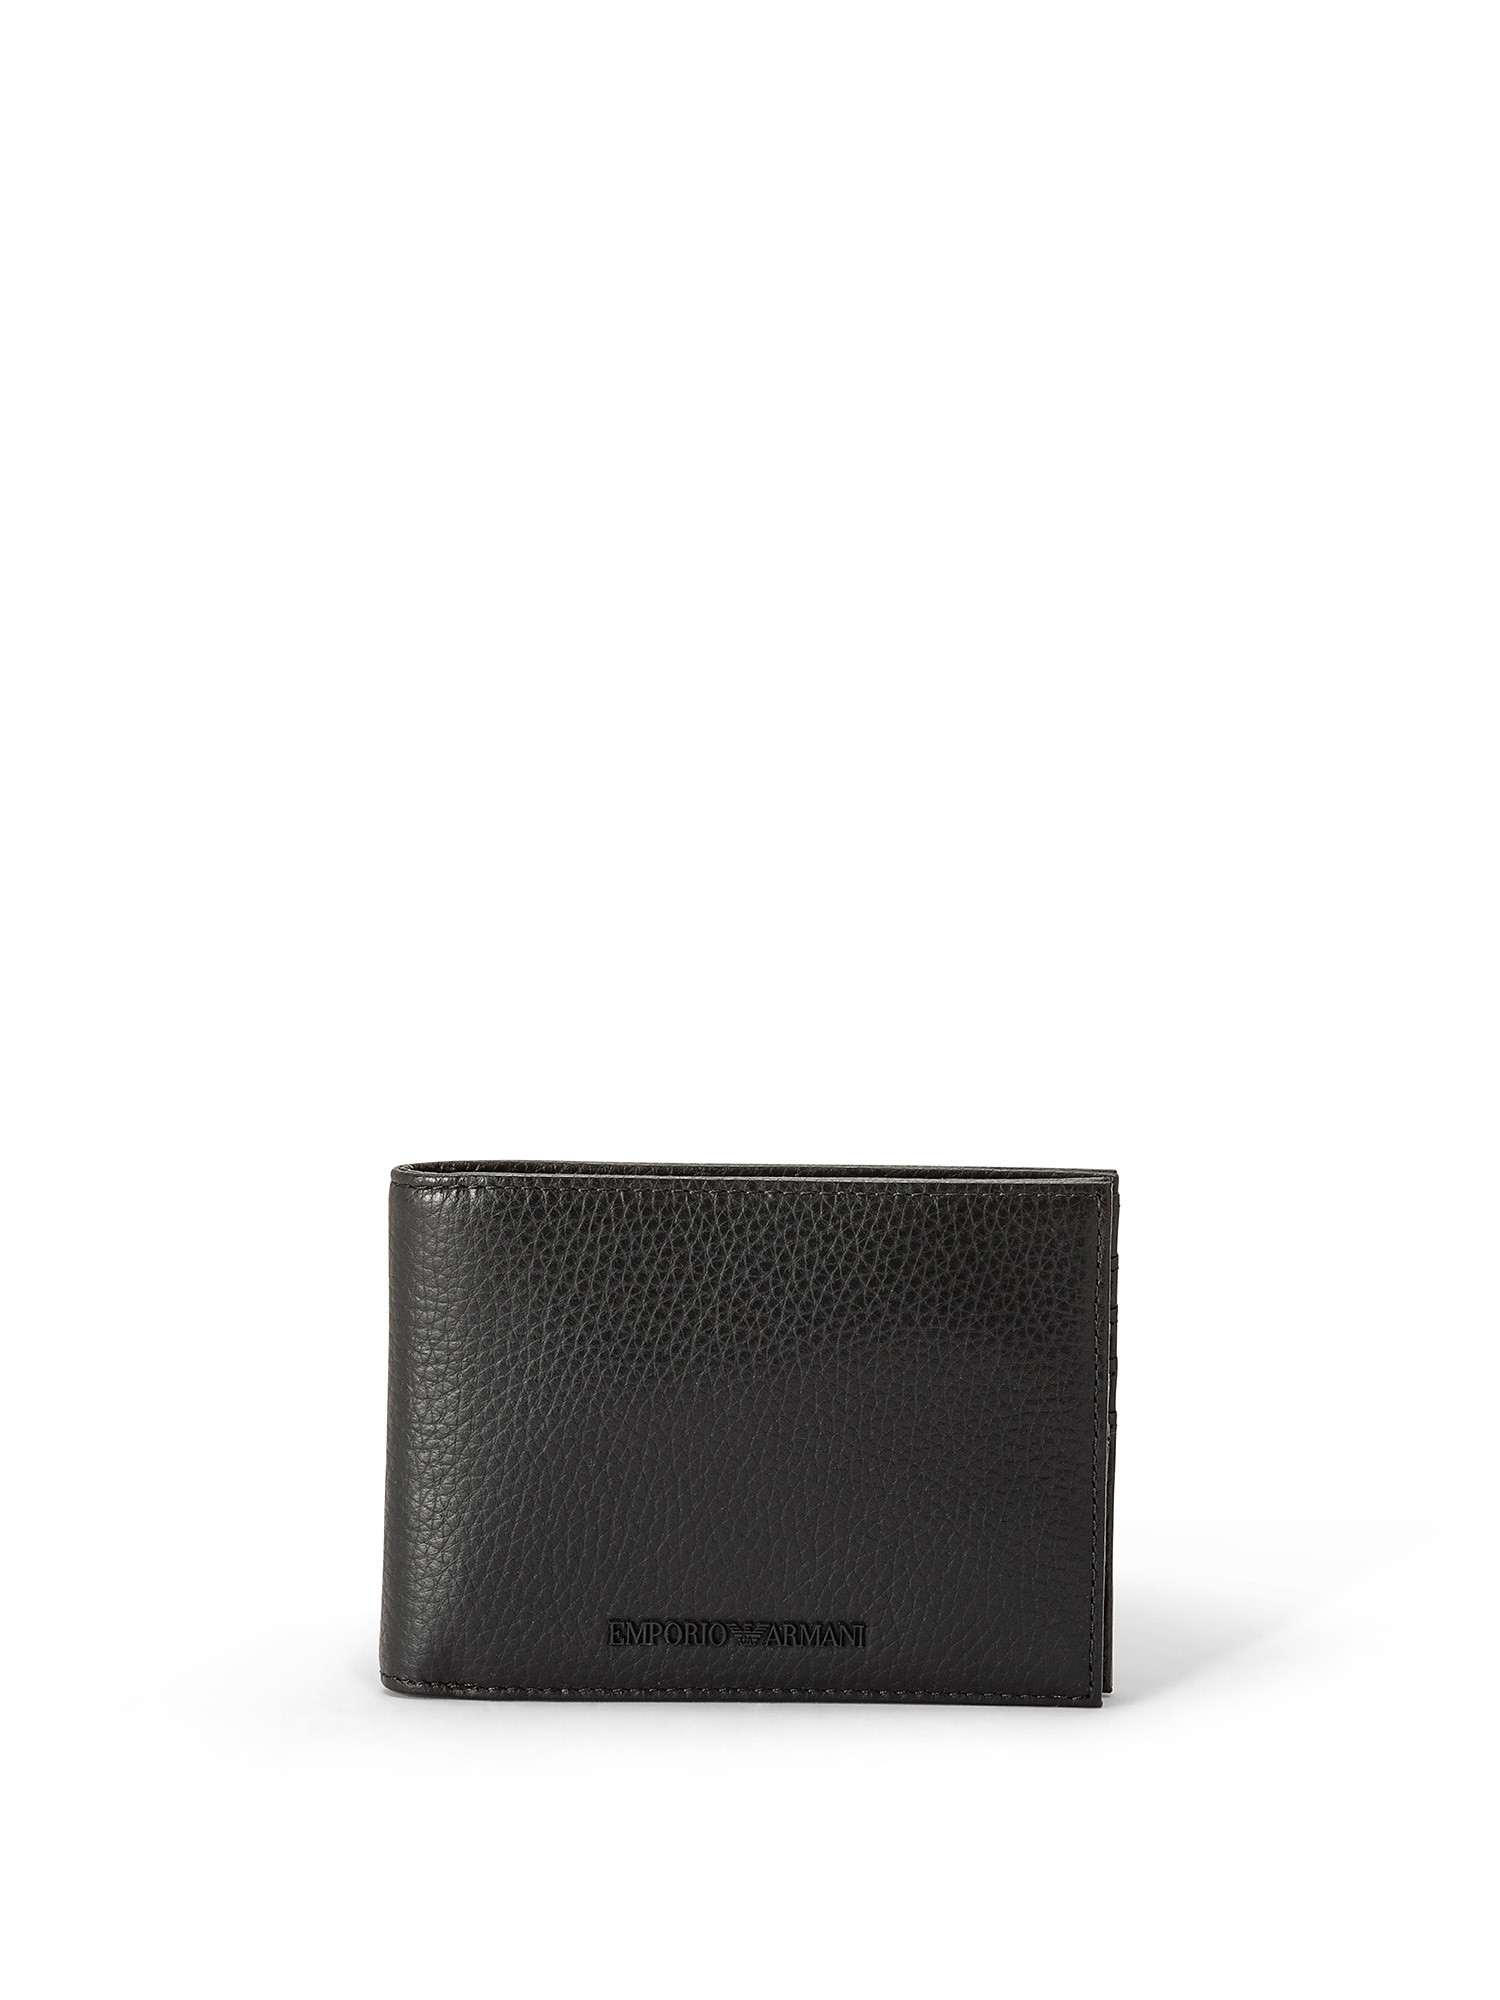 Emporio Armani - Gift box con portafoglio e portachiavi in pelle bottalata, Nero, large image number 0